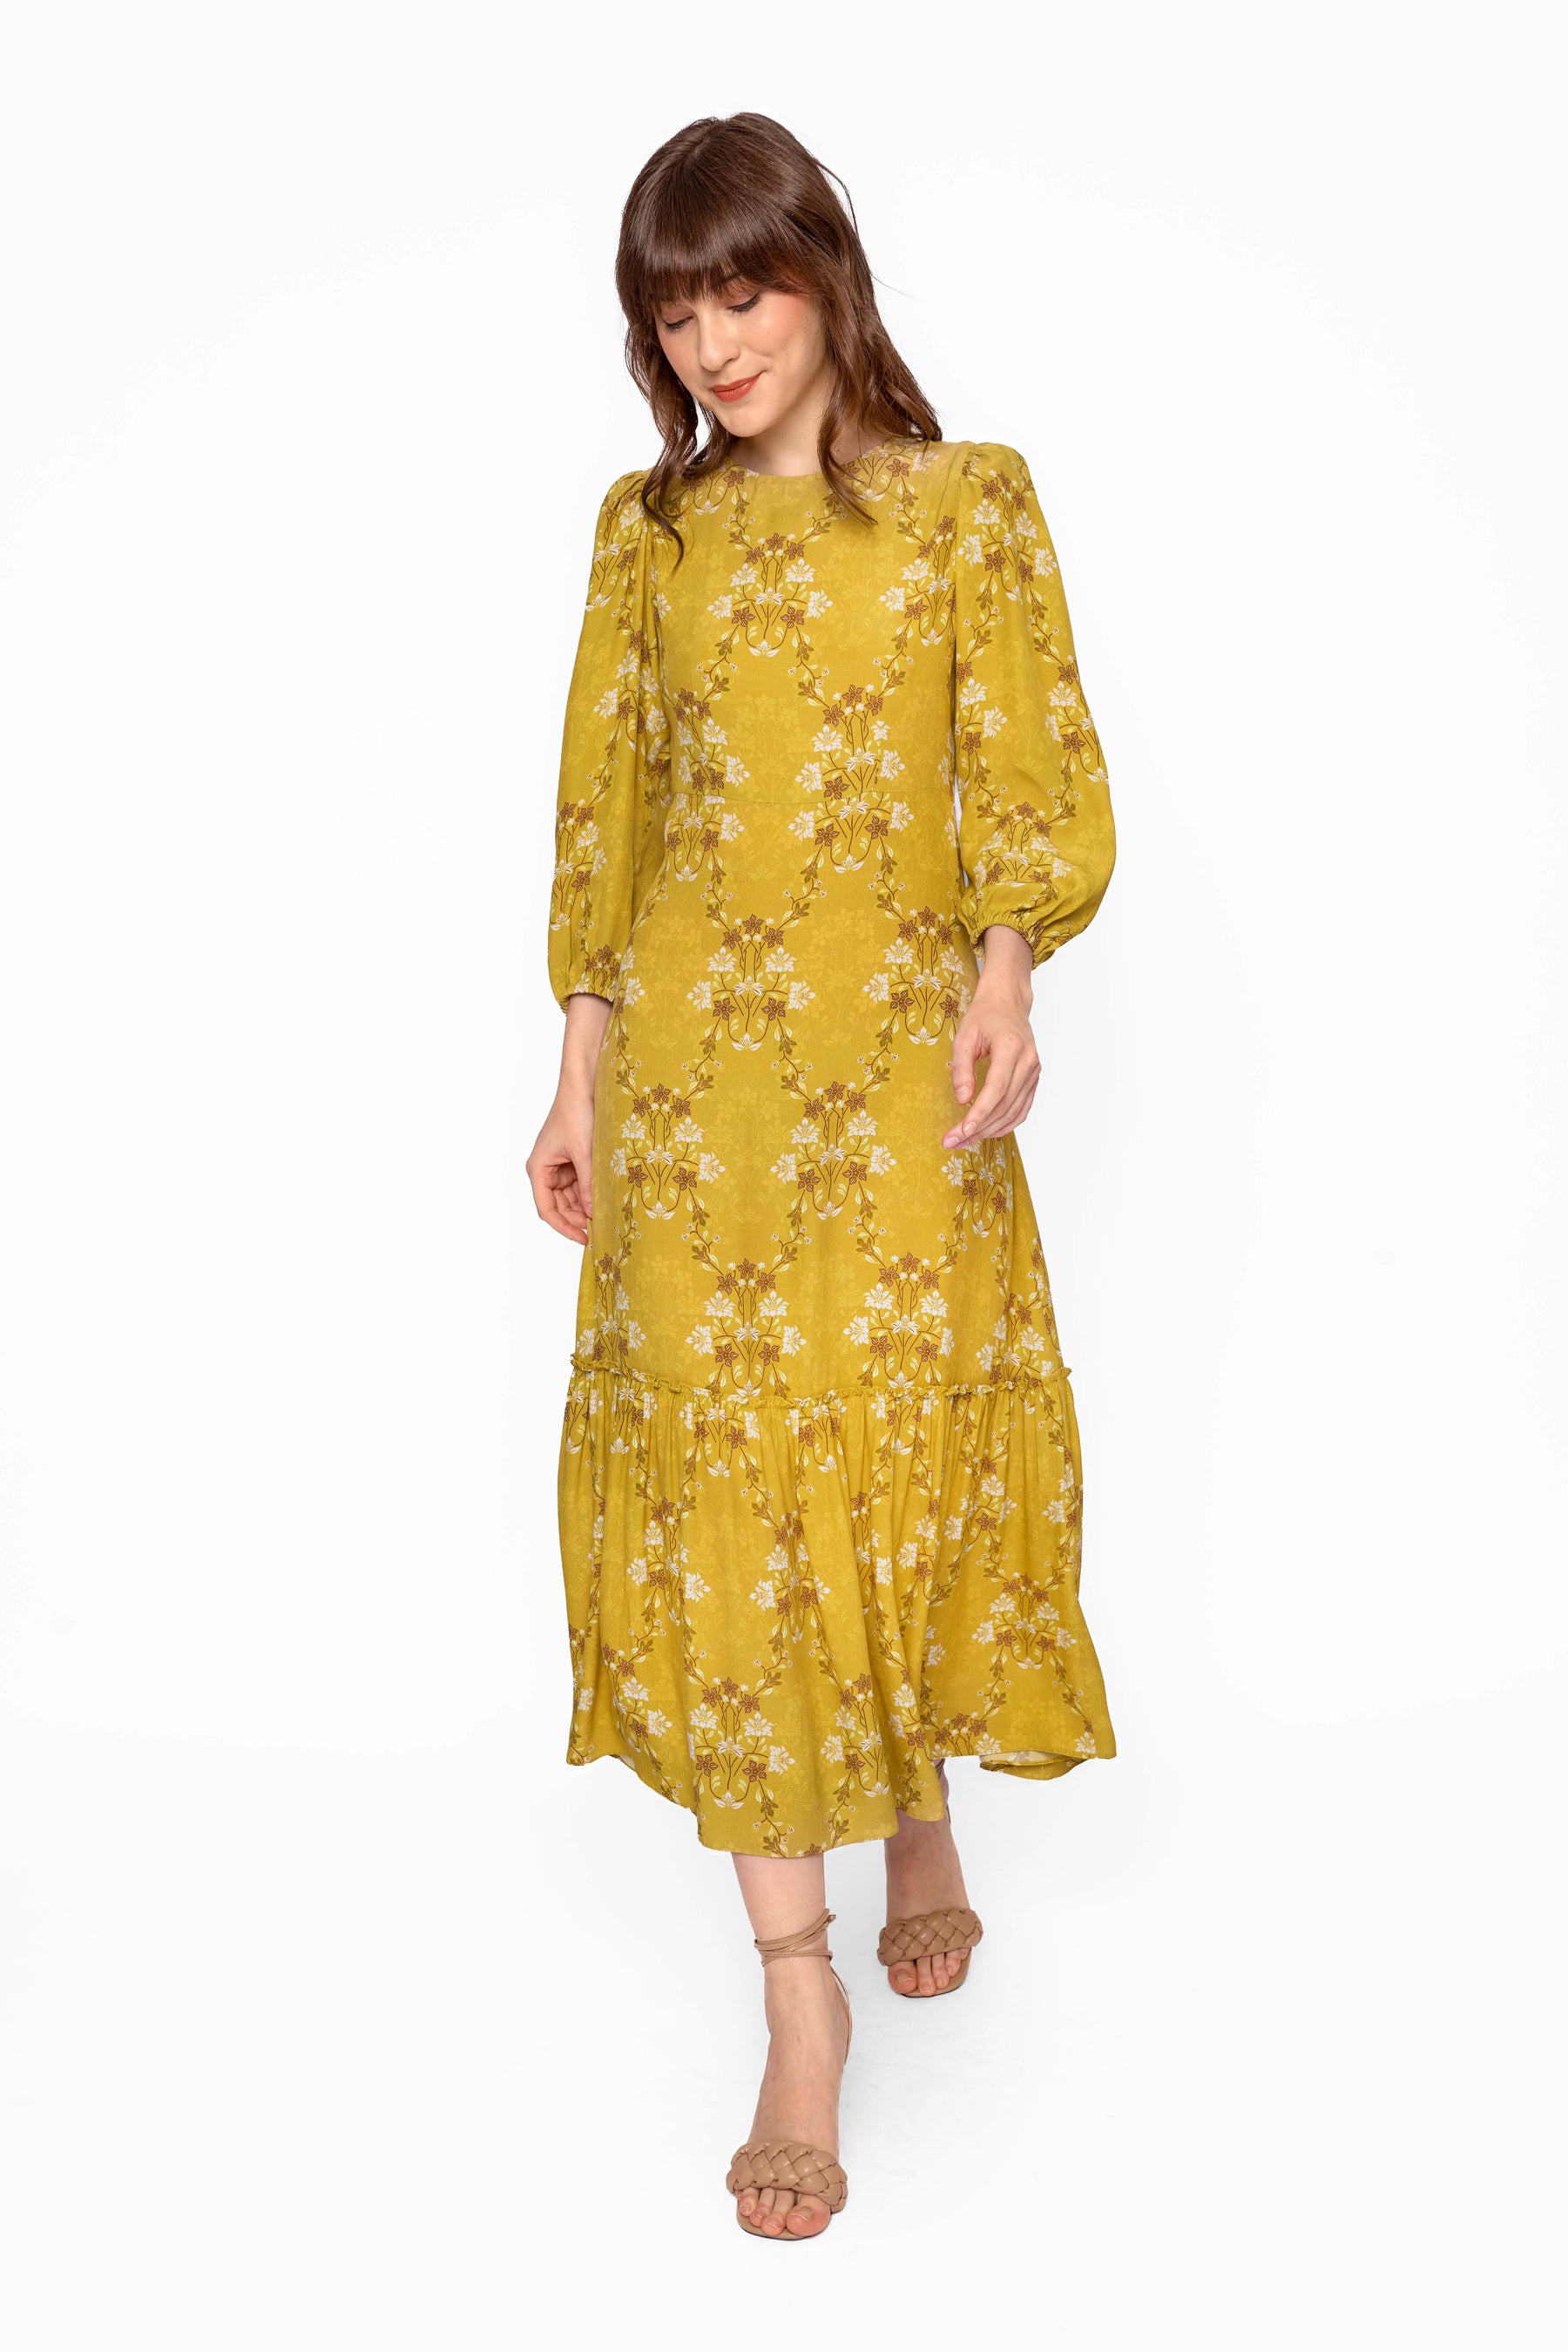 NUALA Dress in Yellow Bunga